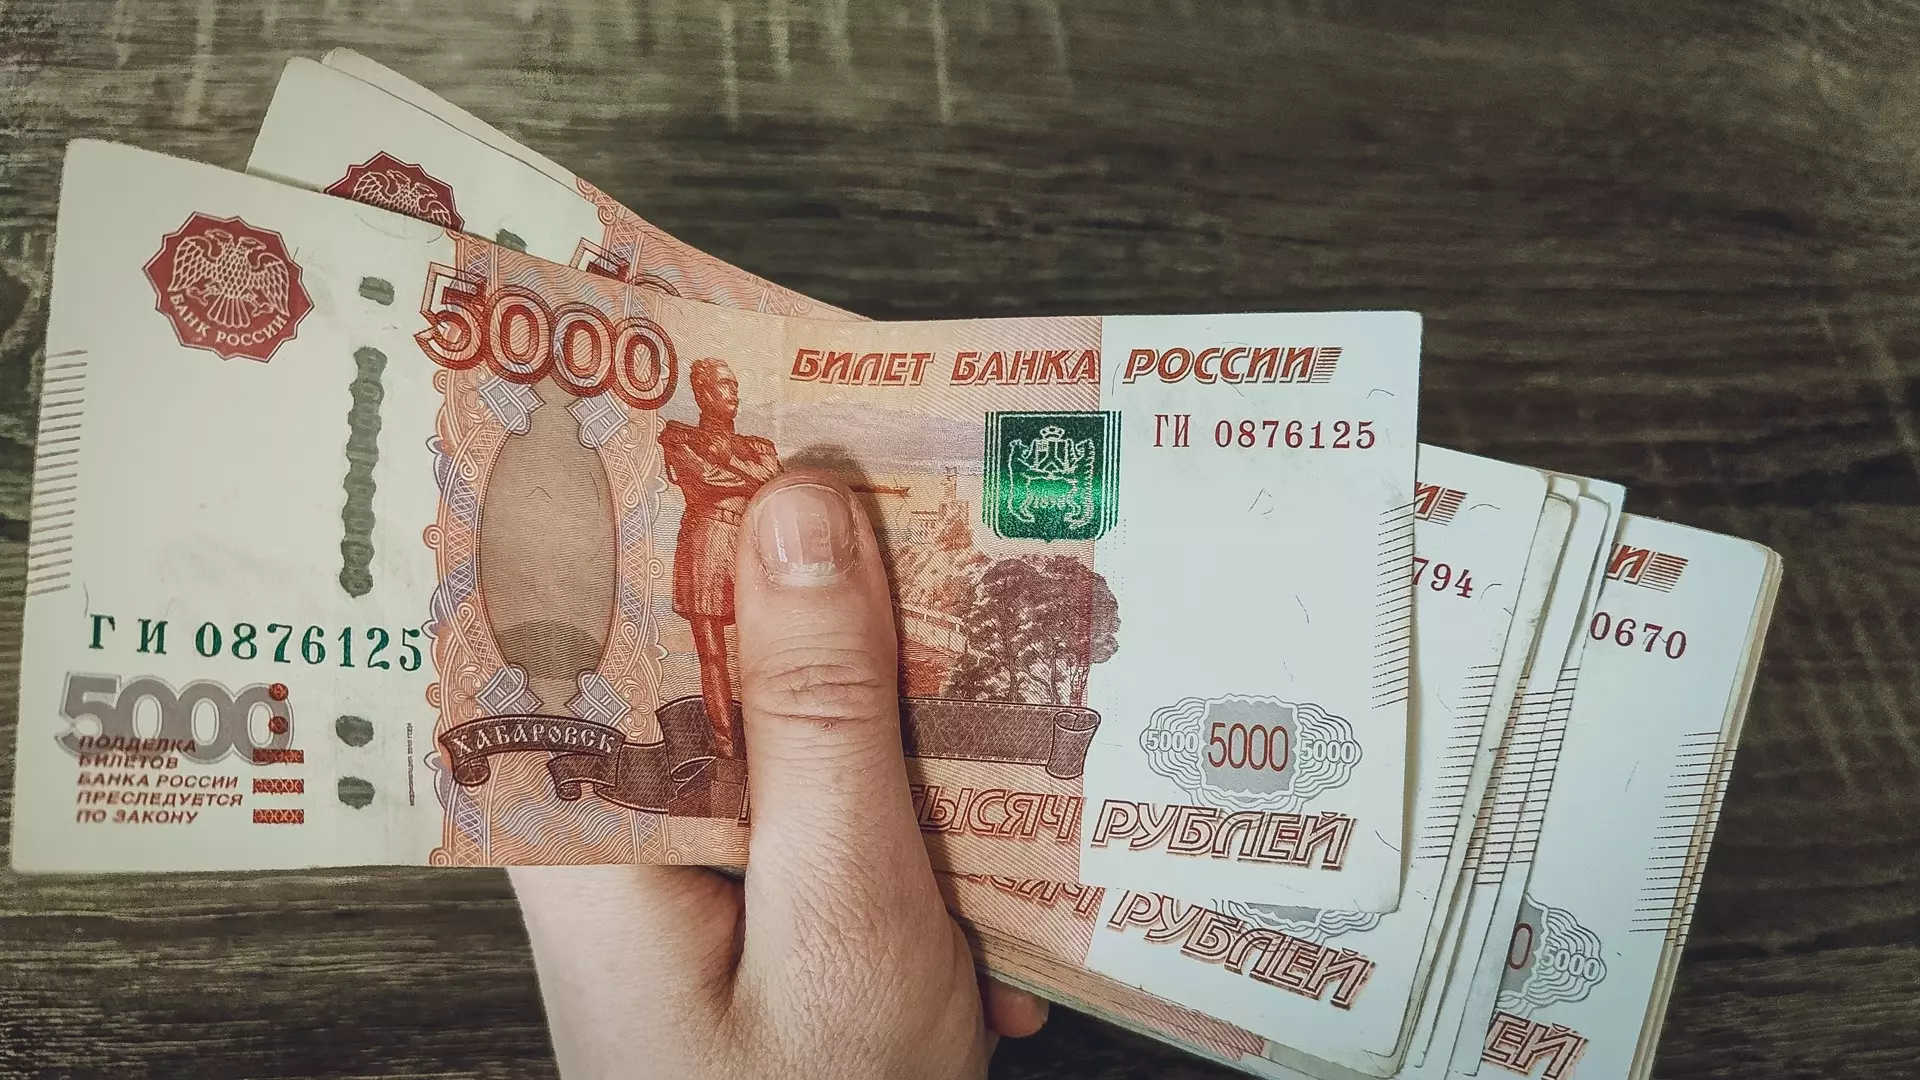 29-летний житель Нижнего Тагила обманул пять пенсионеров на 700 тысяч рублей